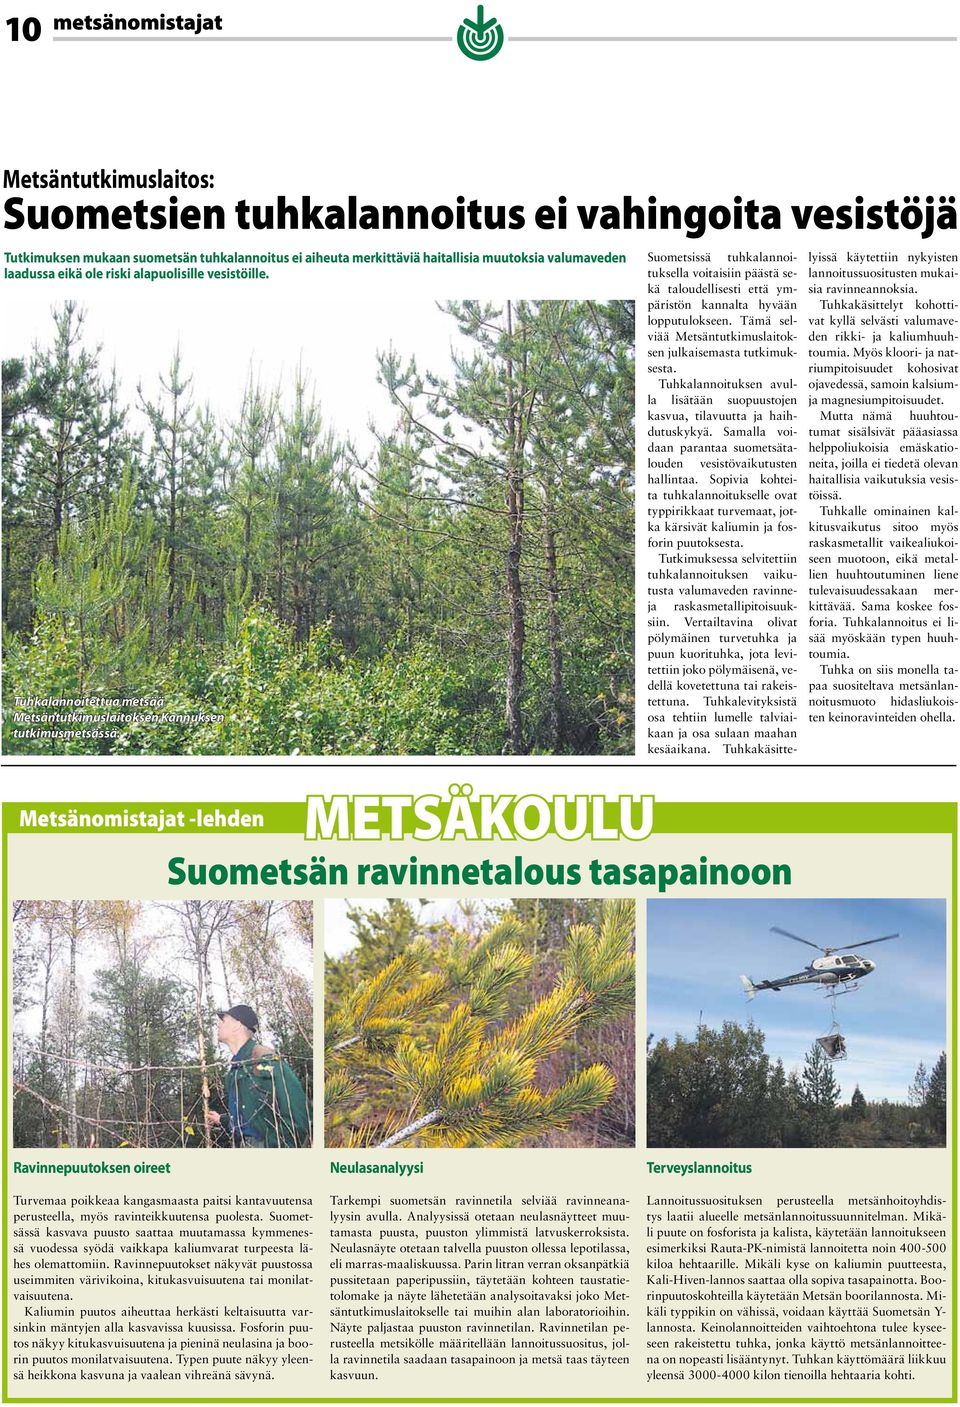 Suometsissä tuhkalannoituksella voitaisiin päästä sekä taloudellisesti että ympäristön kannalta hyvään lopputulokseen. Tämä selviää Metsäntutkimuslaitoksen julkaisemasta tutkimuksesta.